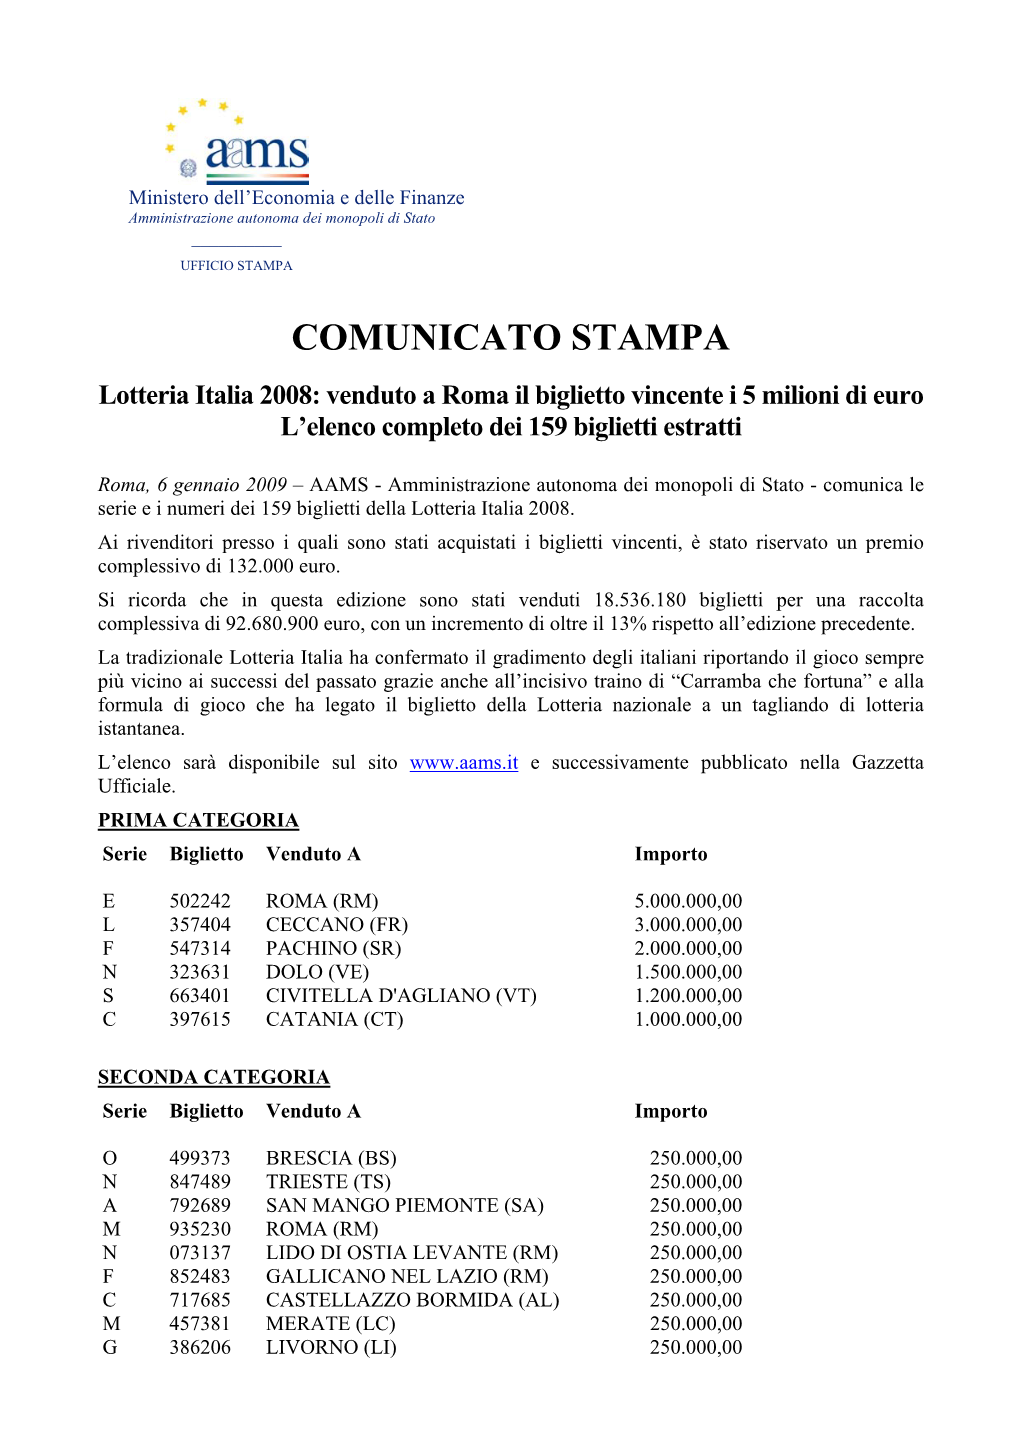 Lotteria Italia 2008: Venduto a Roma Il Biglietto Vincente I 5 Milioni Di Euro L’Elenco Completo Dei 159 Biglietti Estratti